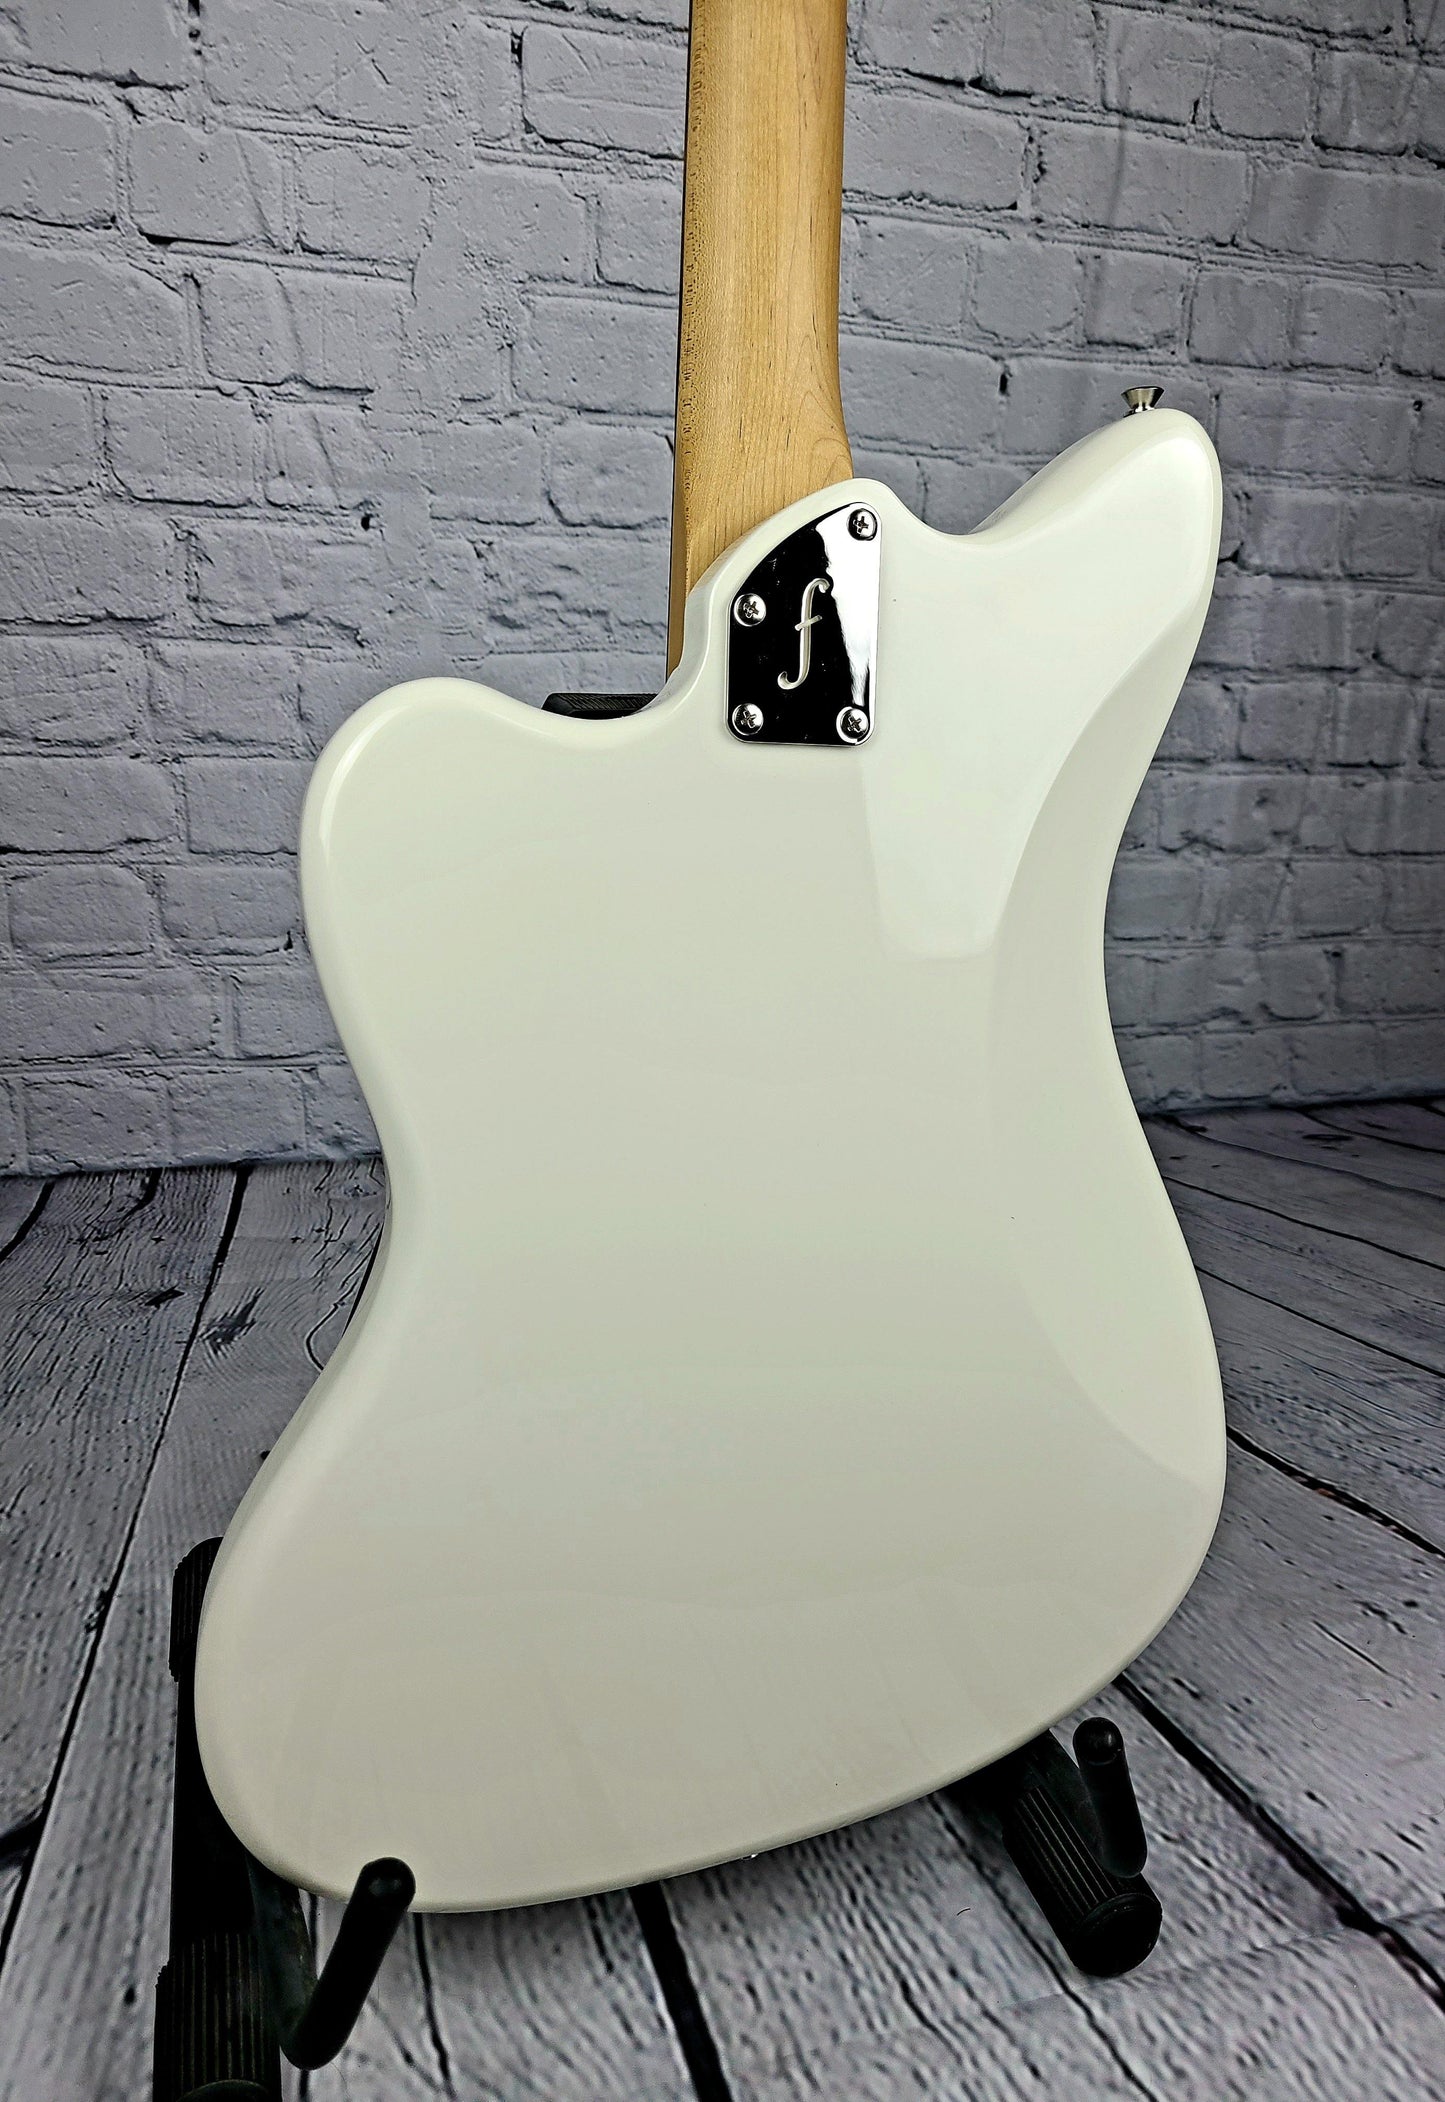 Fano JM6 Omnis Olympic White Offset Electric Guitar - Guitar Brando